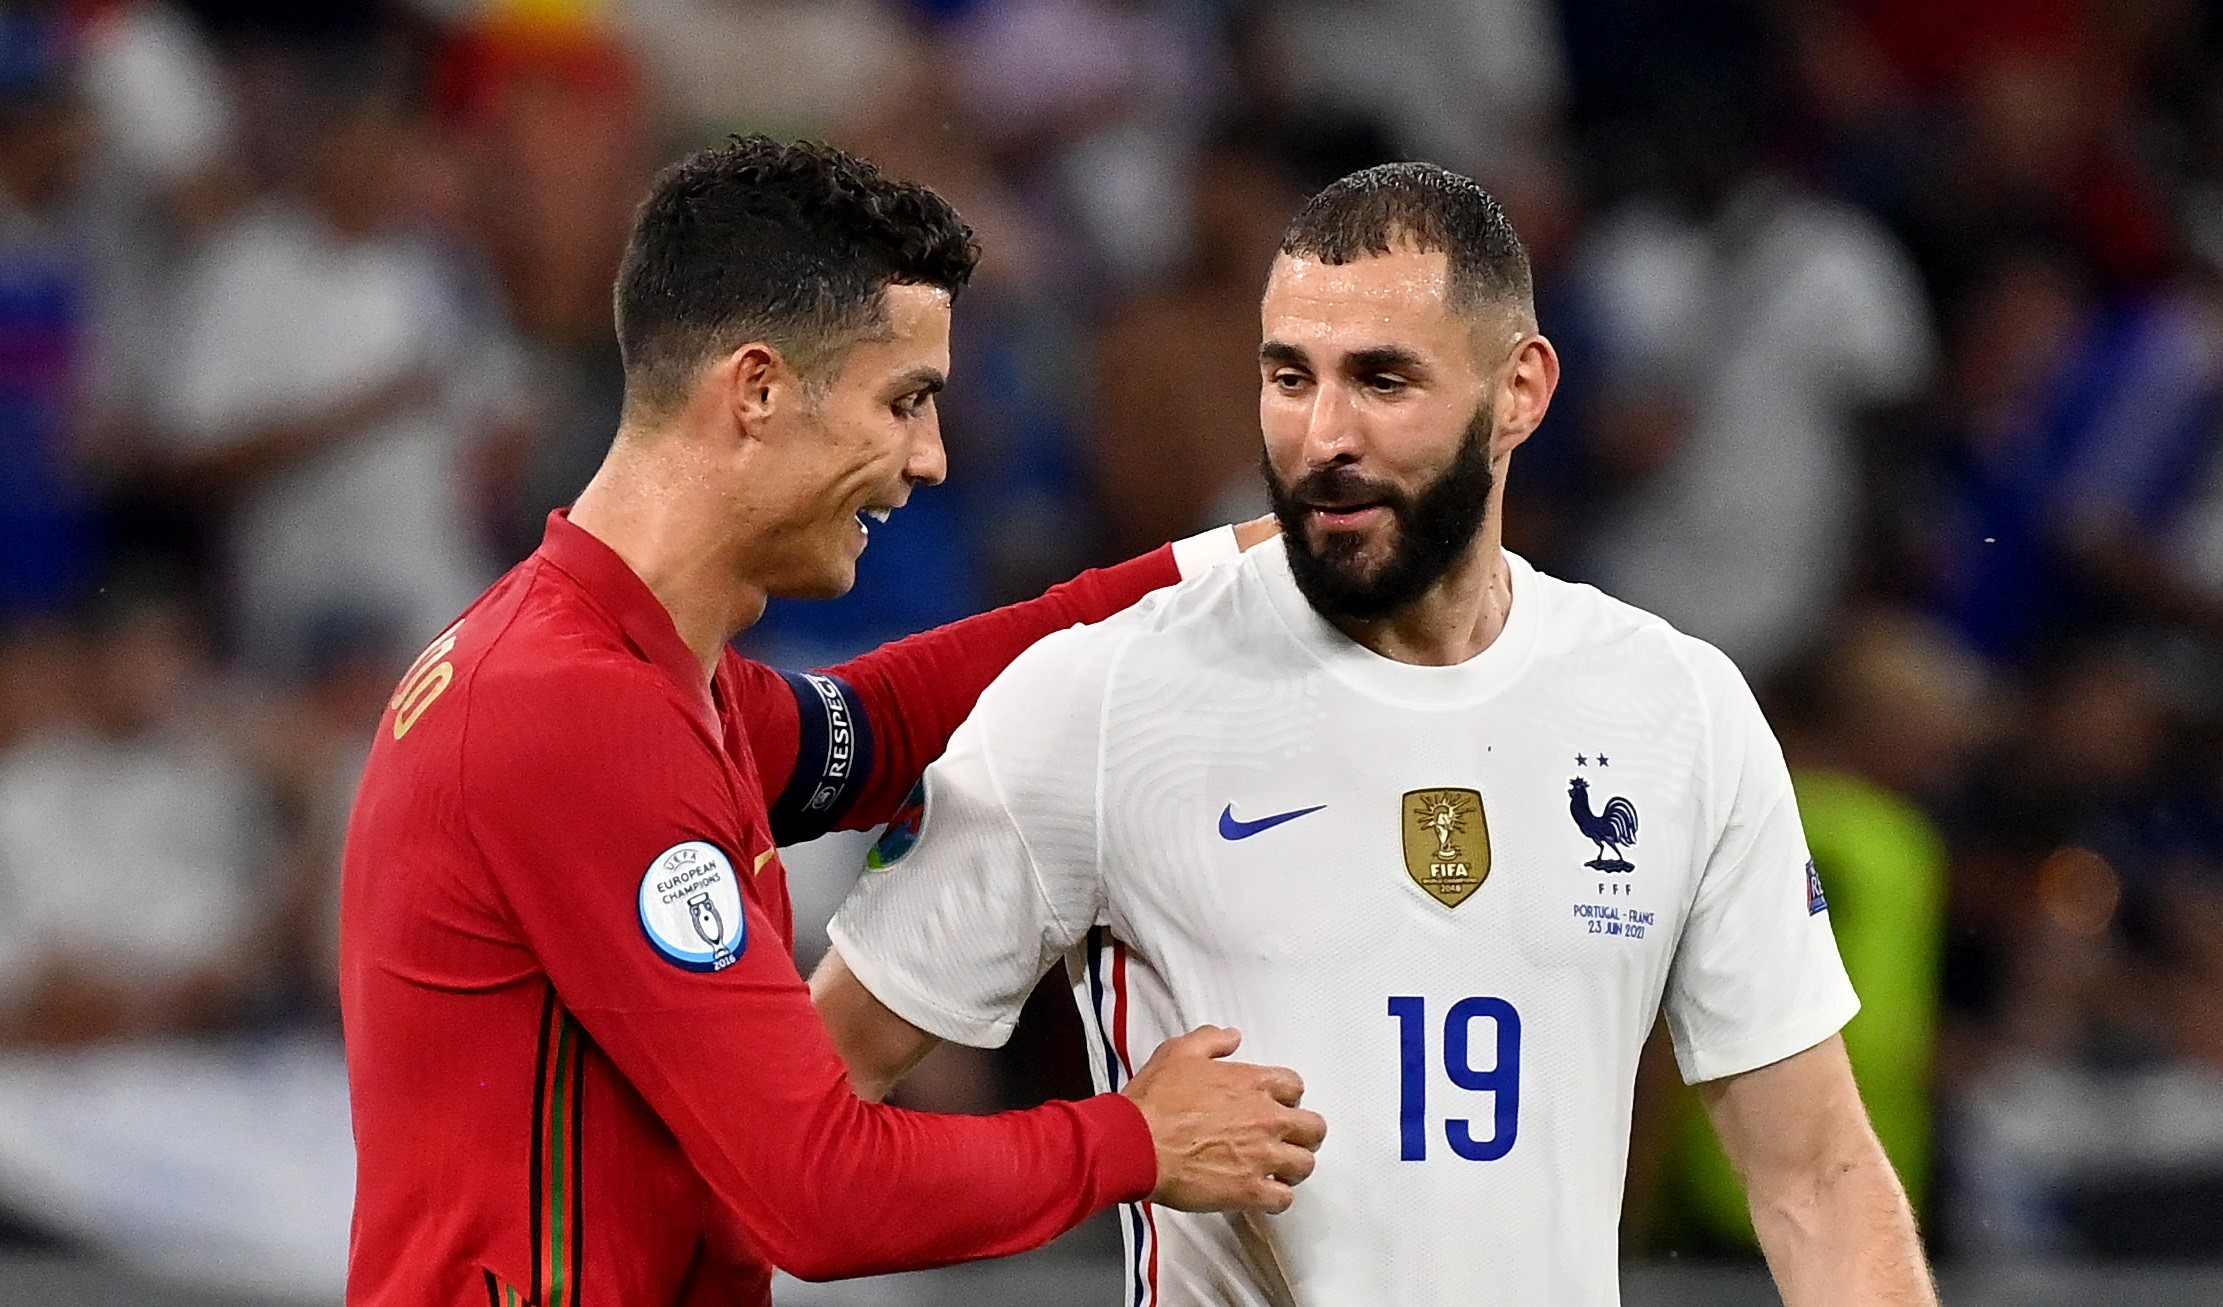 Cristiano Ronaldo dan Karim Benzema bereuni dan menghasilkan rekor saat Portugal vs Prancis di matchday Grup F Euro 2020, Kamis 24 Juni 2021 di Ferenc Puskas Stadium. (Foto: Twitter/@EURO2020)